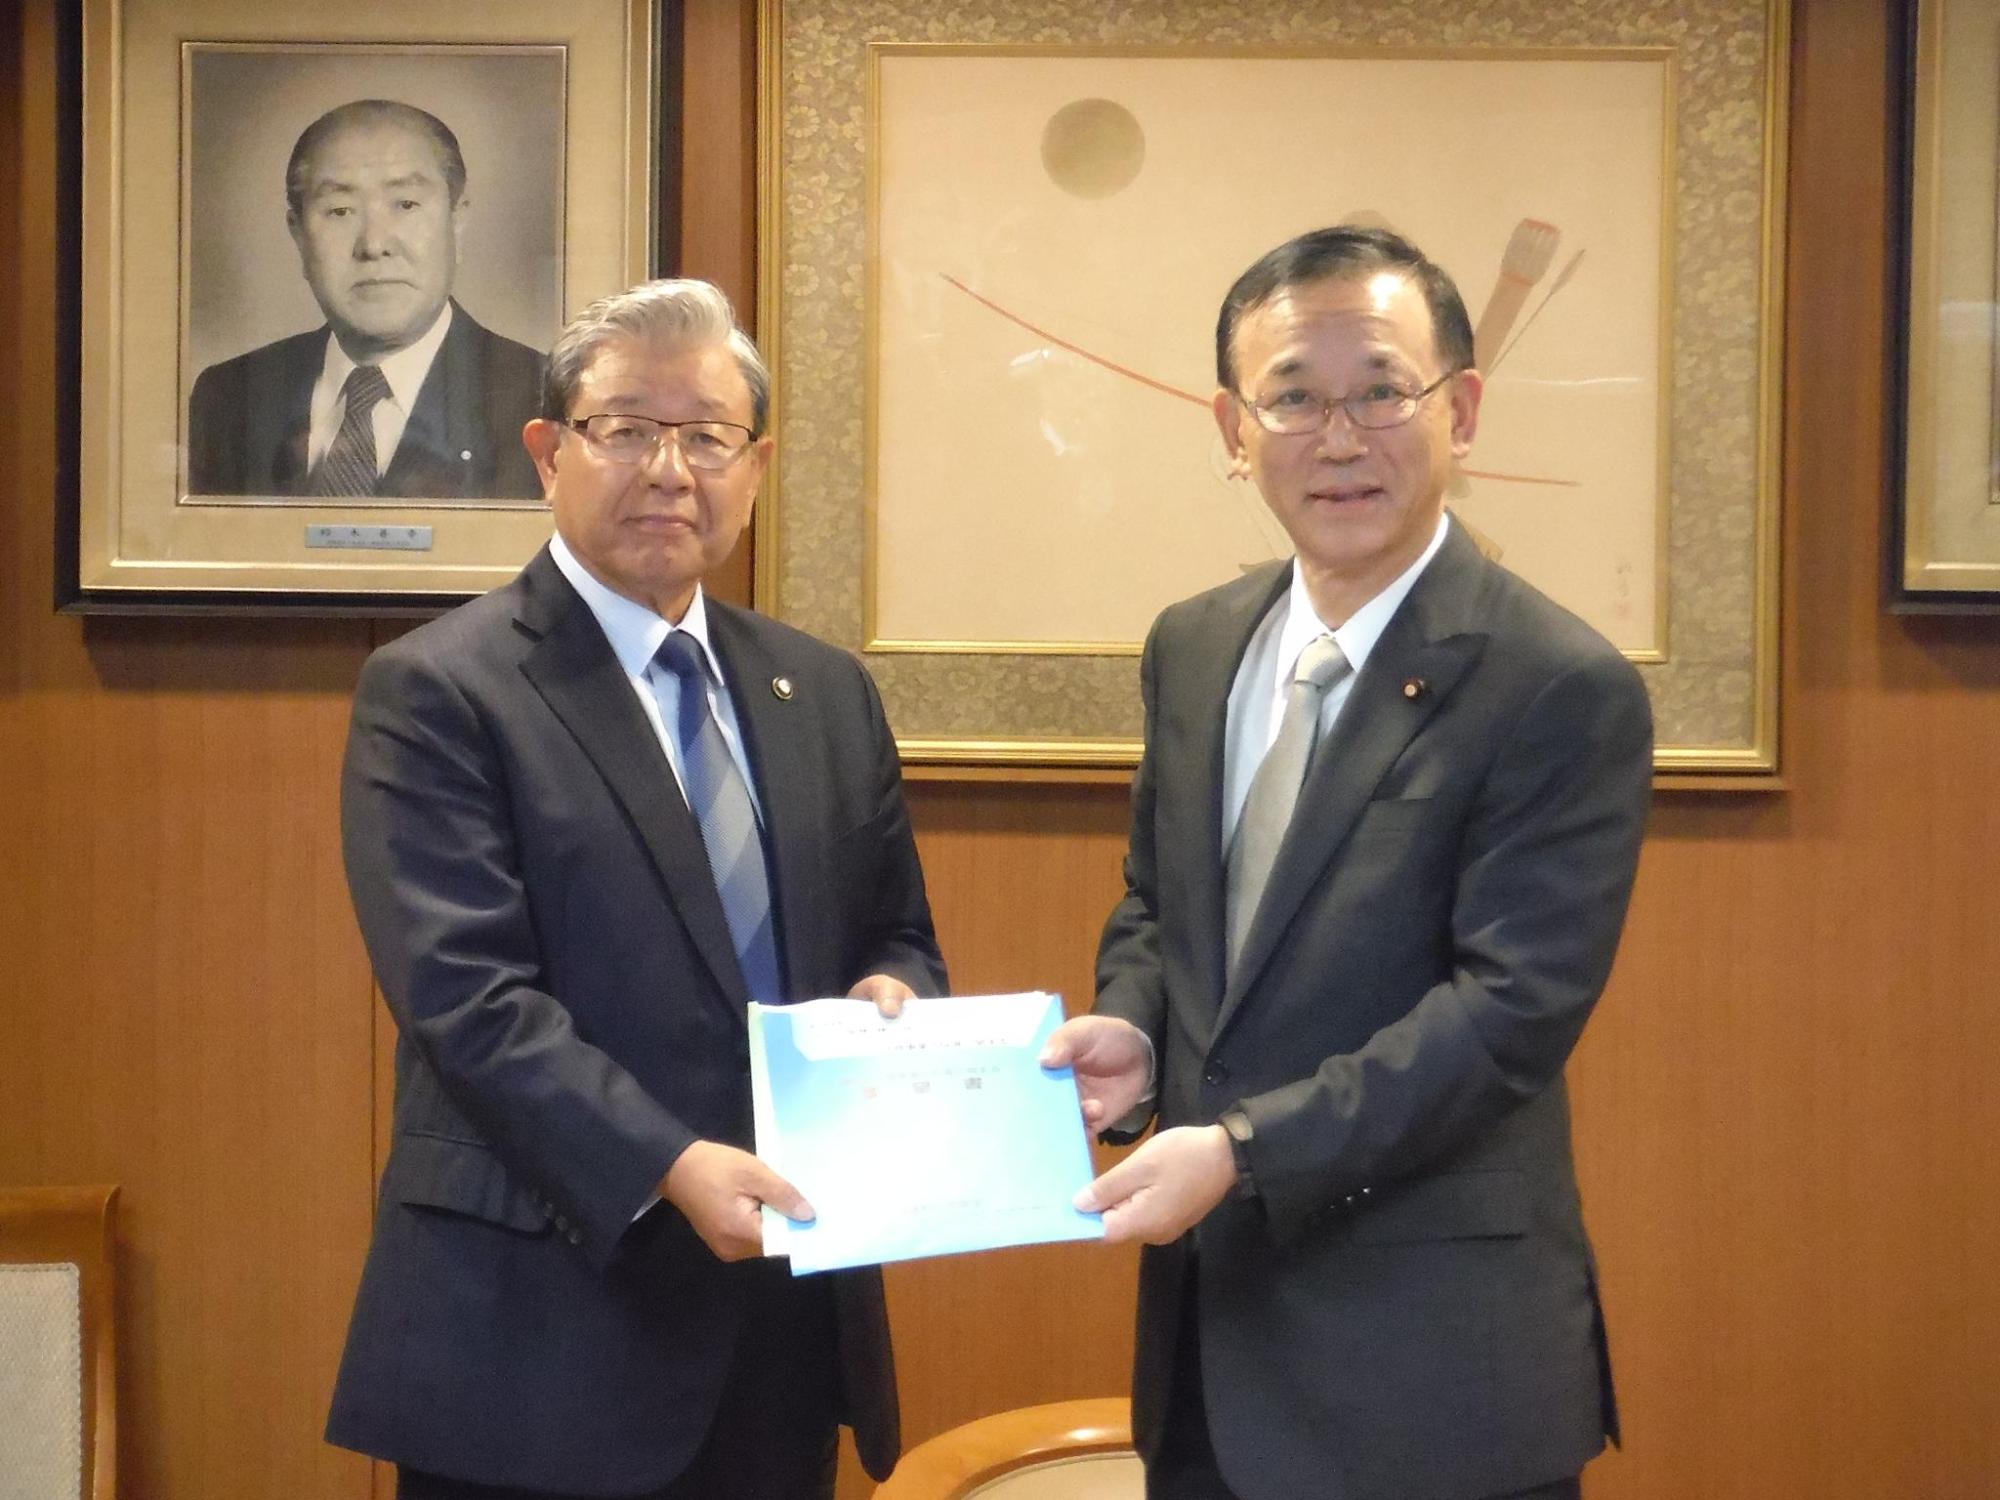 要望書を谷垣自民党幹事長に手渡す蓬莱市長の写真